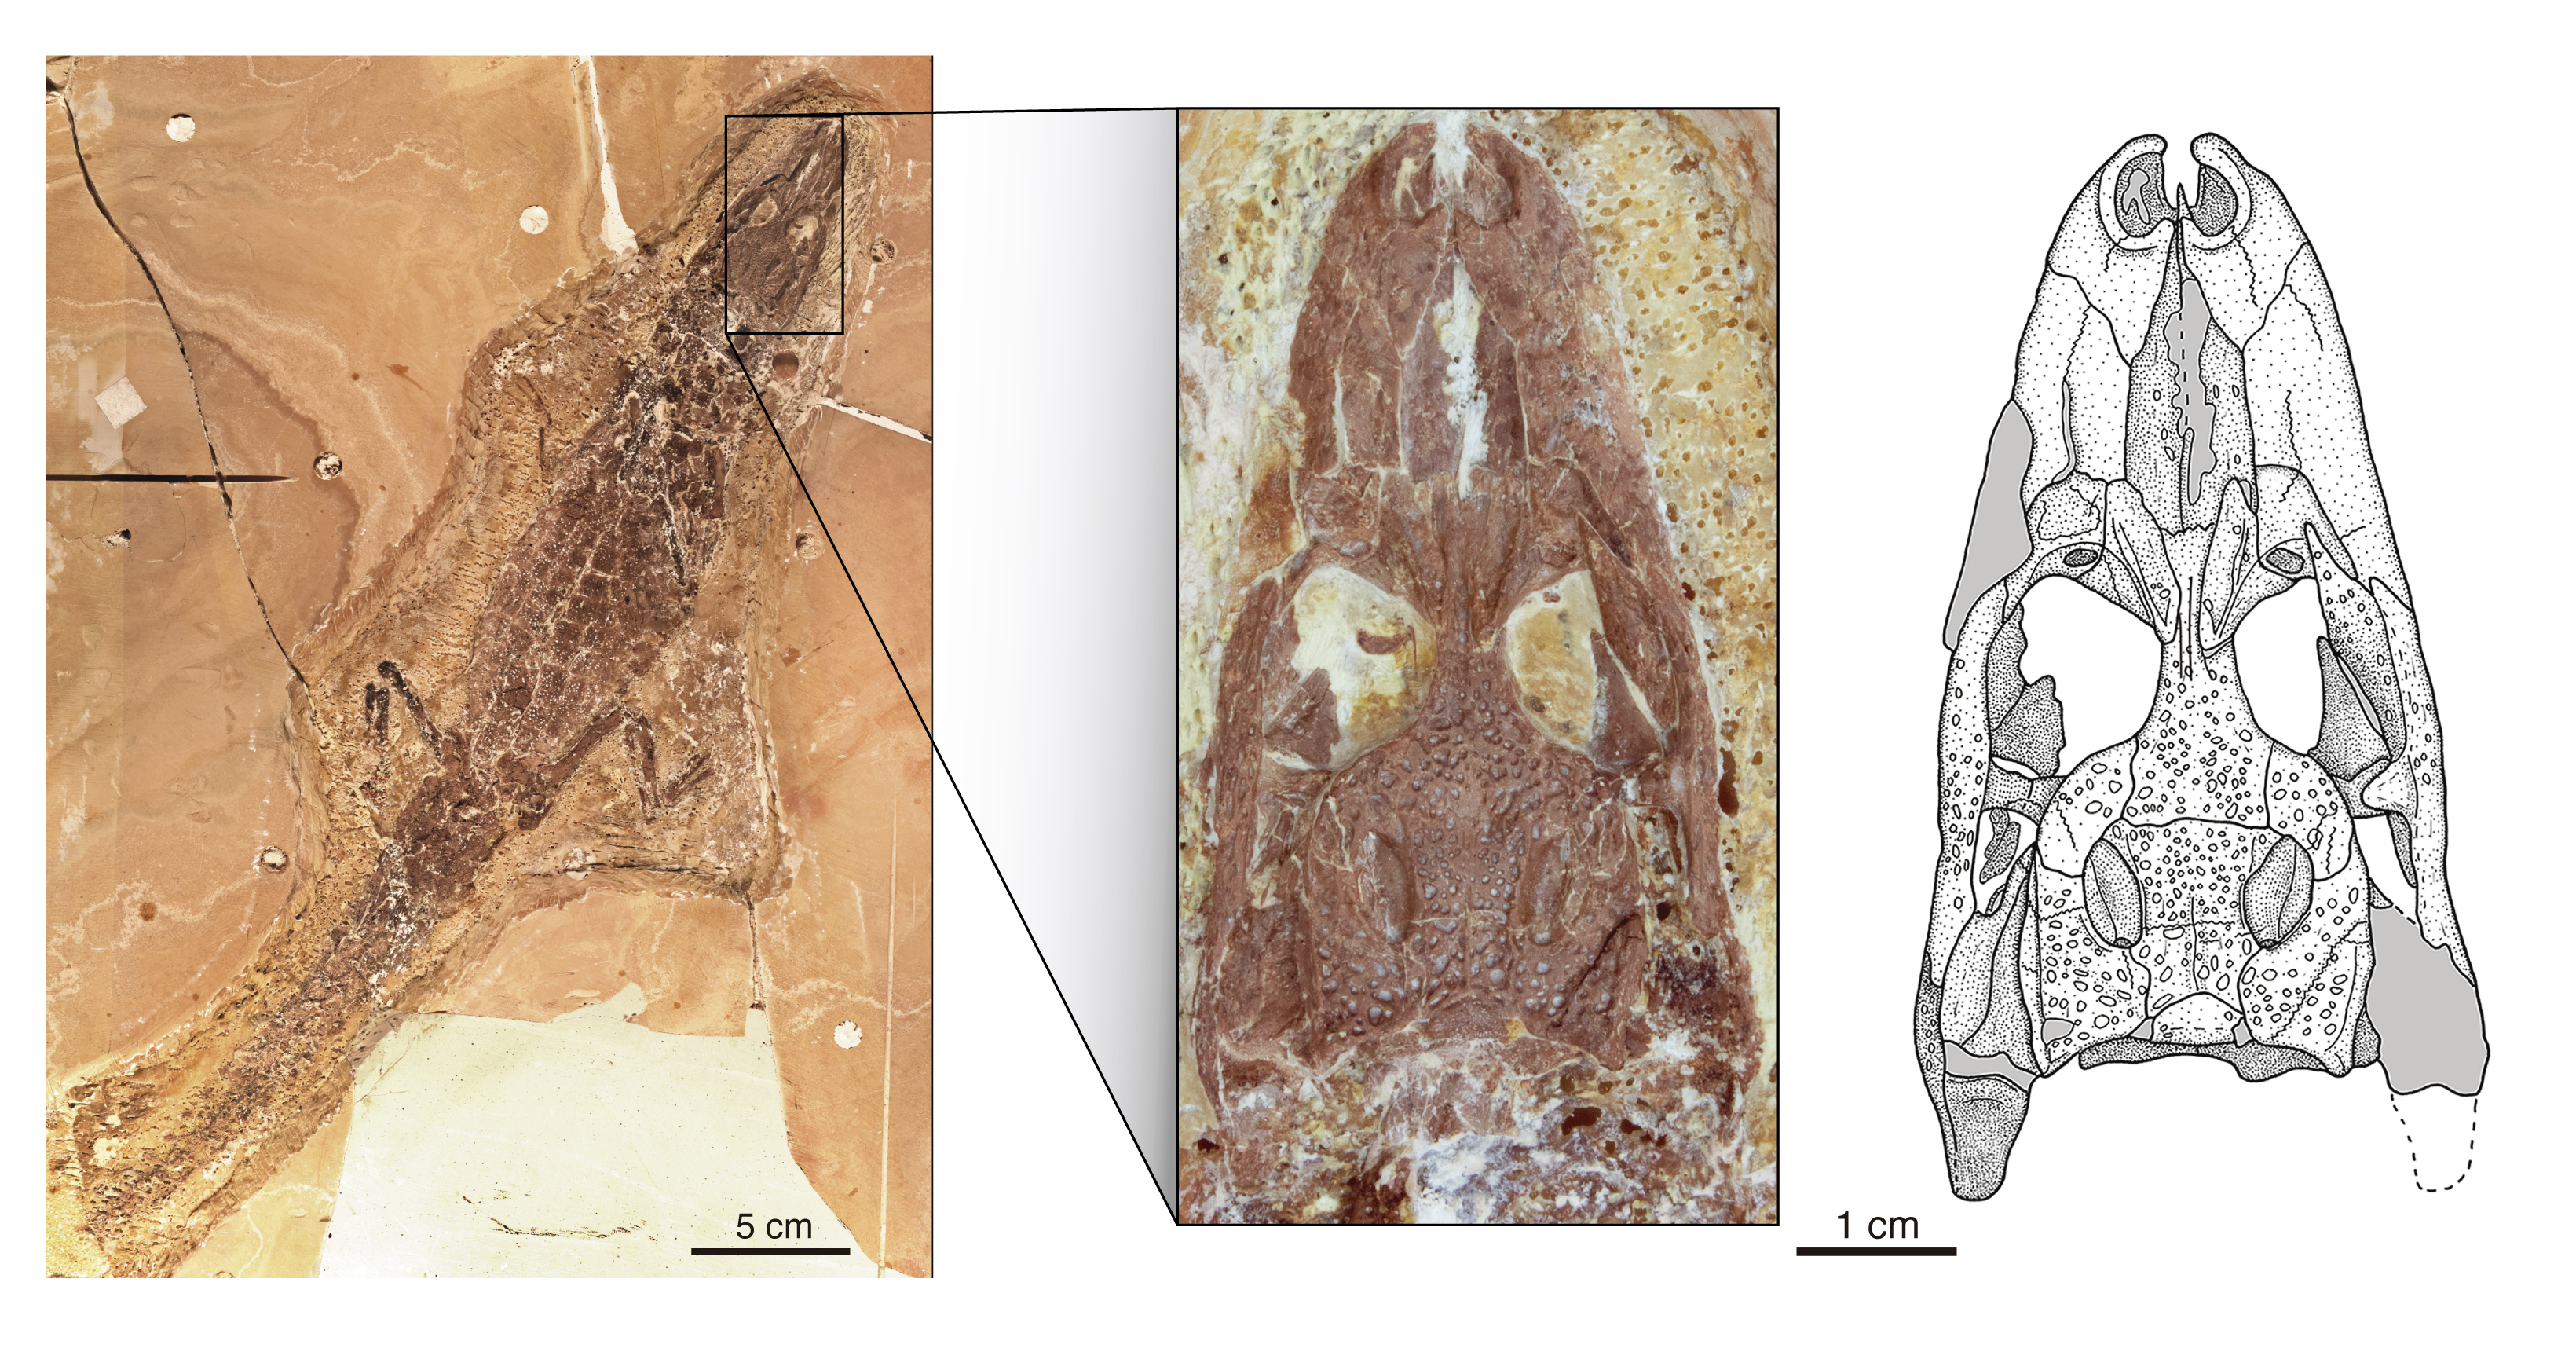 Skelett und Schädel (Vergrößerung) eines der seltenen Funde von Tsoabichi greenriverensis, einem frühen Kaiman, aus den rund 52 Millionen Jahre alten Gesteinen der Green-River-Formation in Wyoming, USA. 